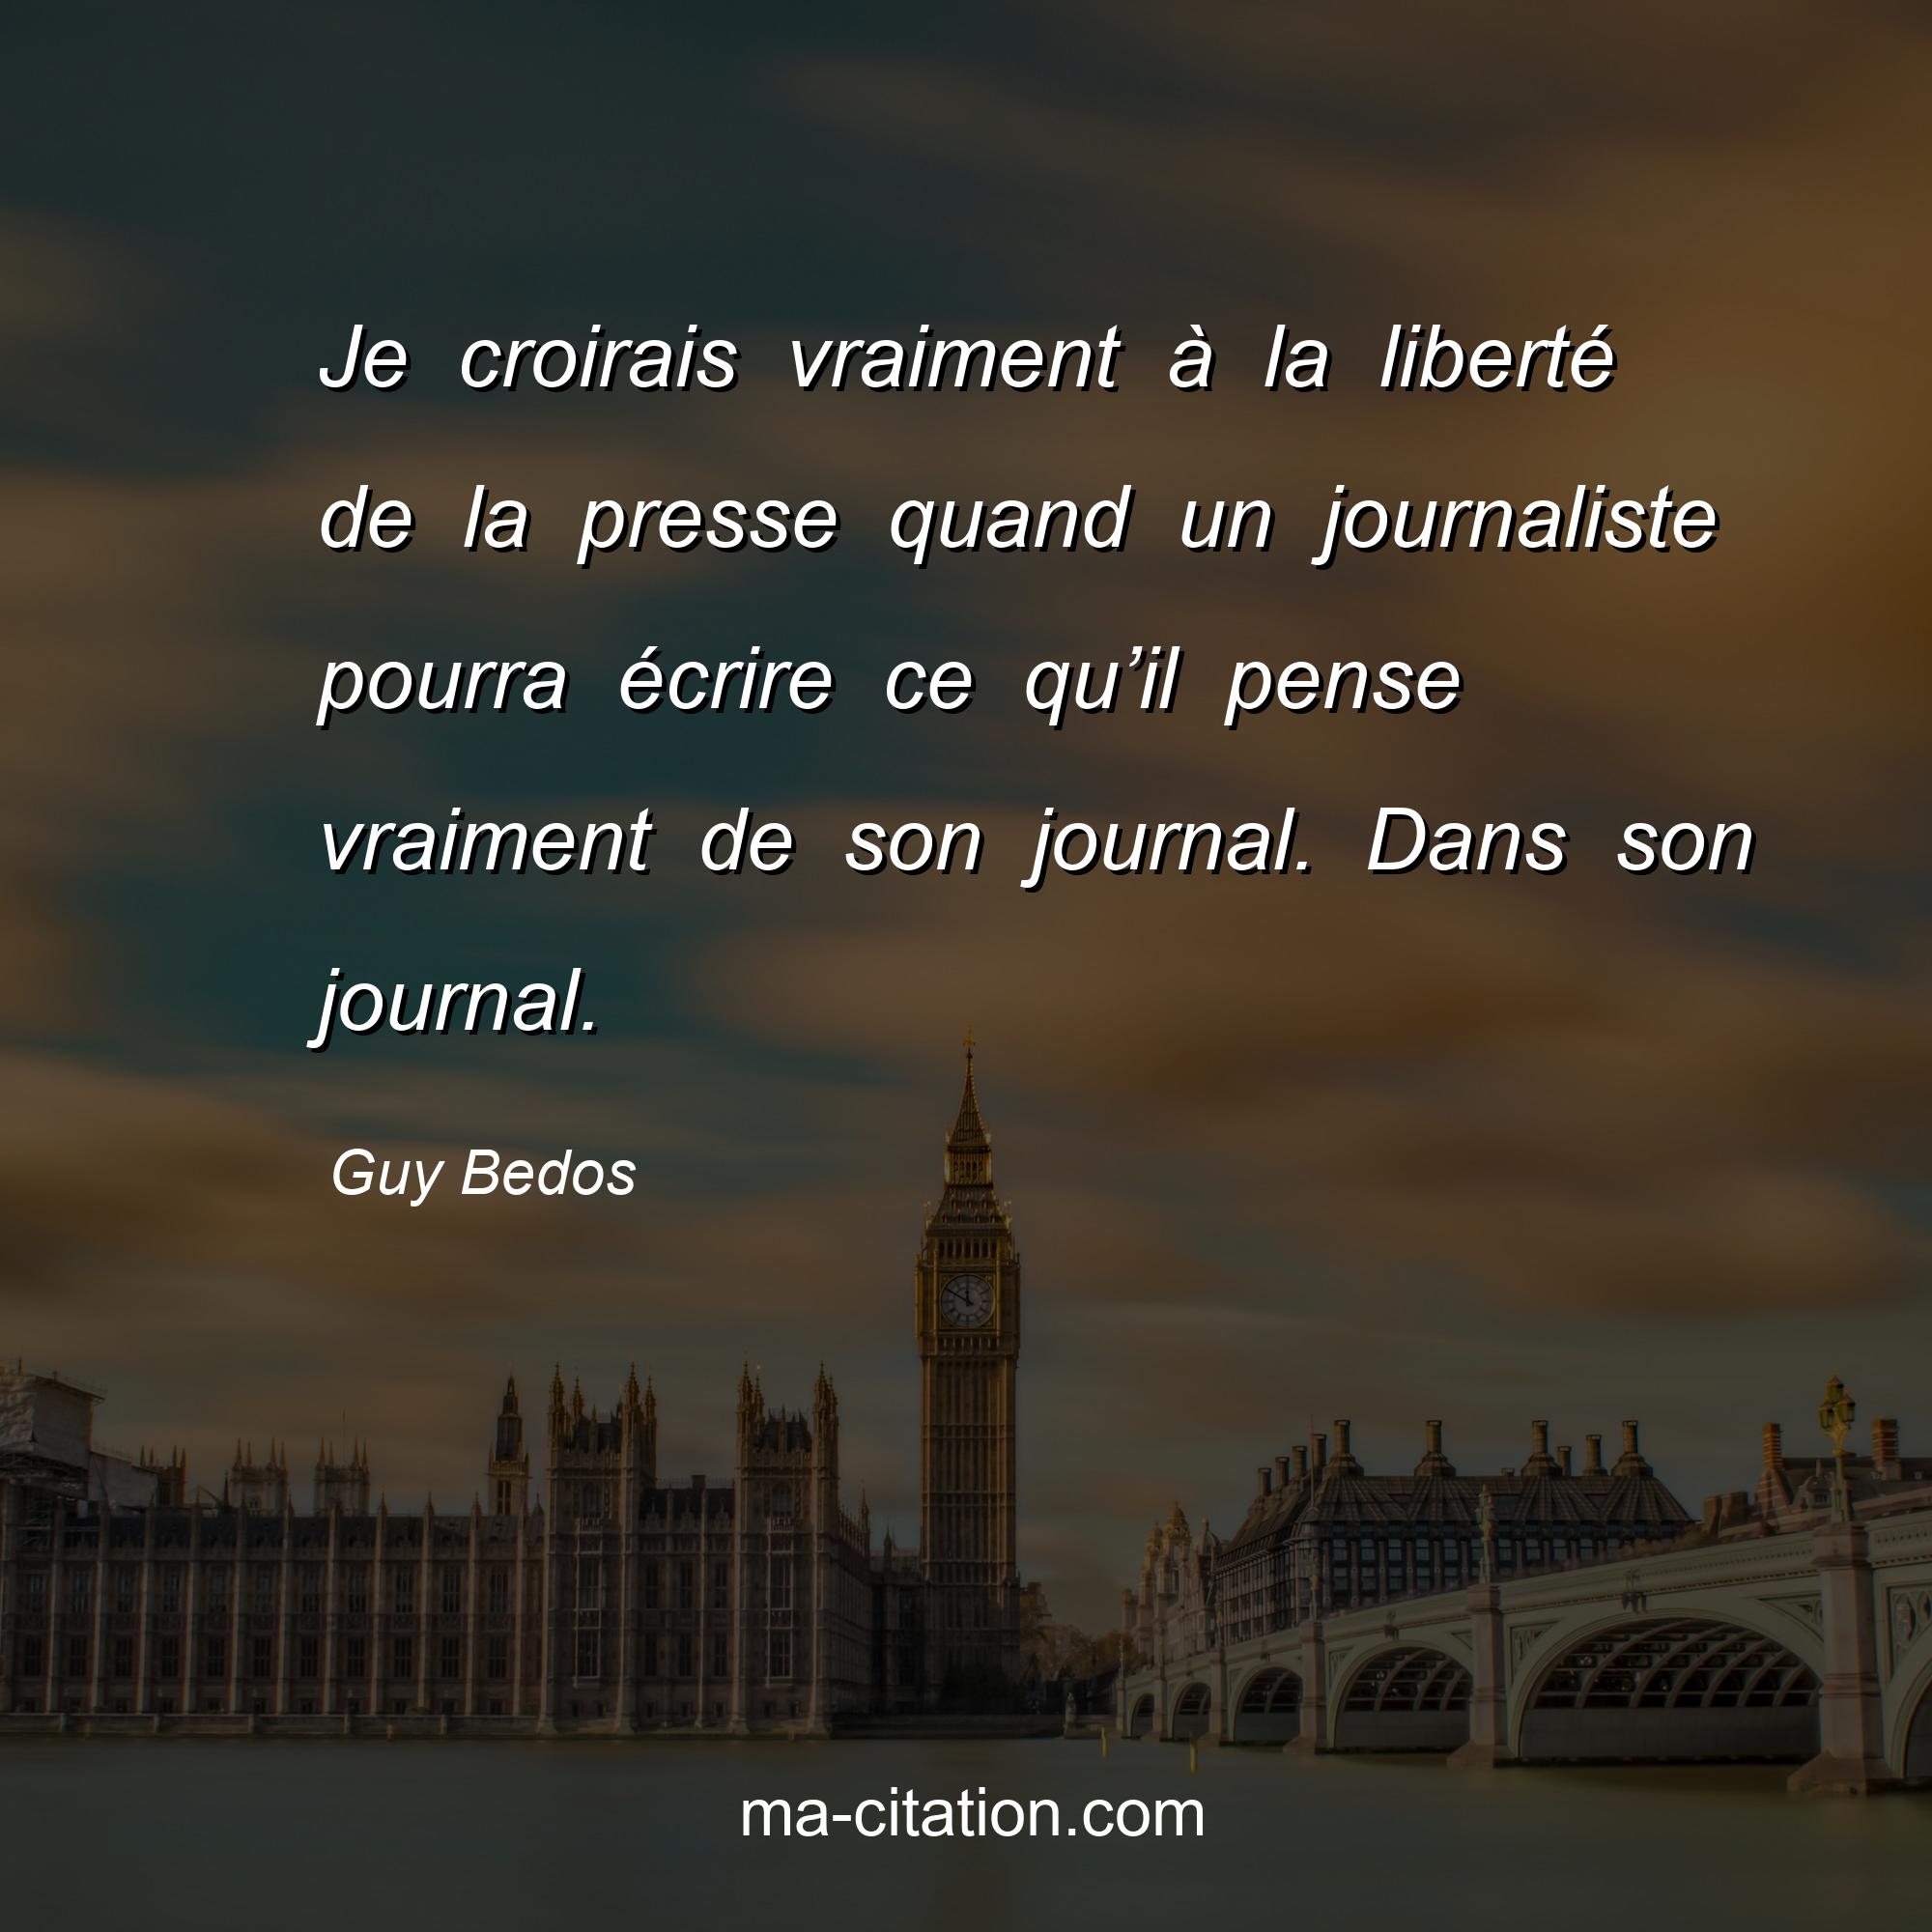 Guy Bedos : Je croirais vraiment à la liberté de la presse quand un journaliste pourra écrire ce qu’il pense vraiment de son journal. Dans son journal.